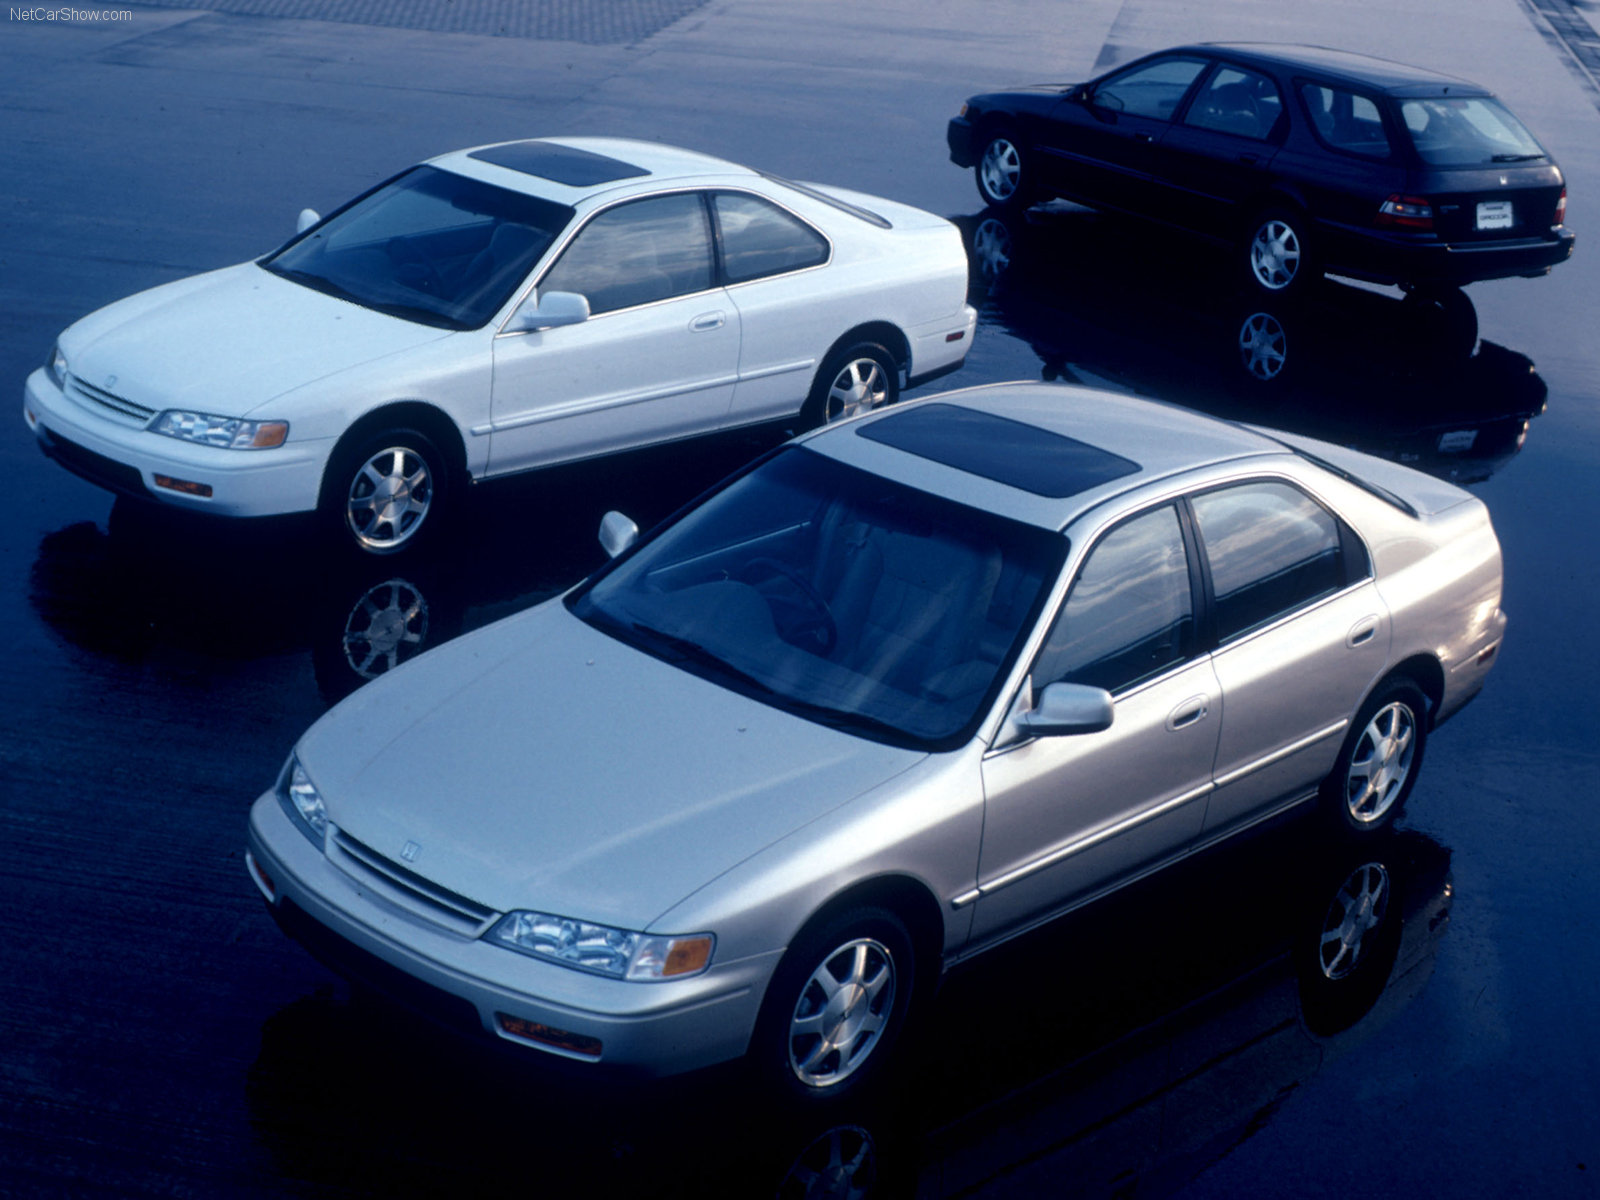 Honda Accord Sedan 1994 honda-accord-sedan-1994-honda-accordsedan-1994-1600-03_9617479